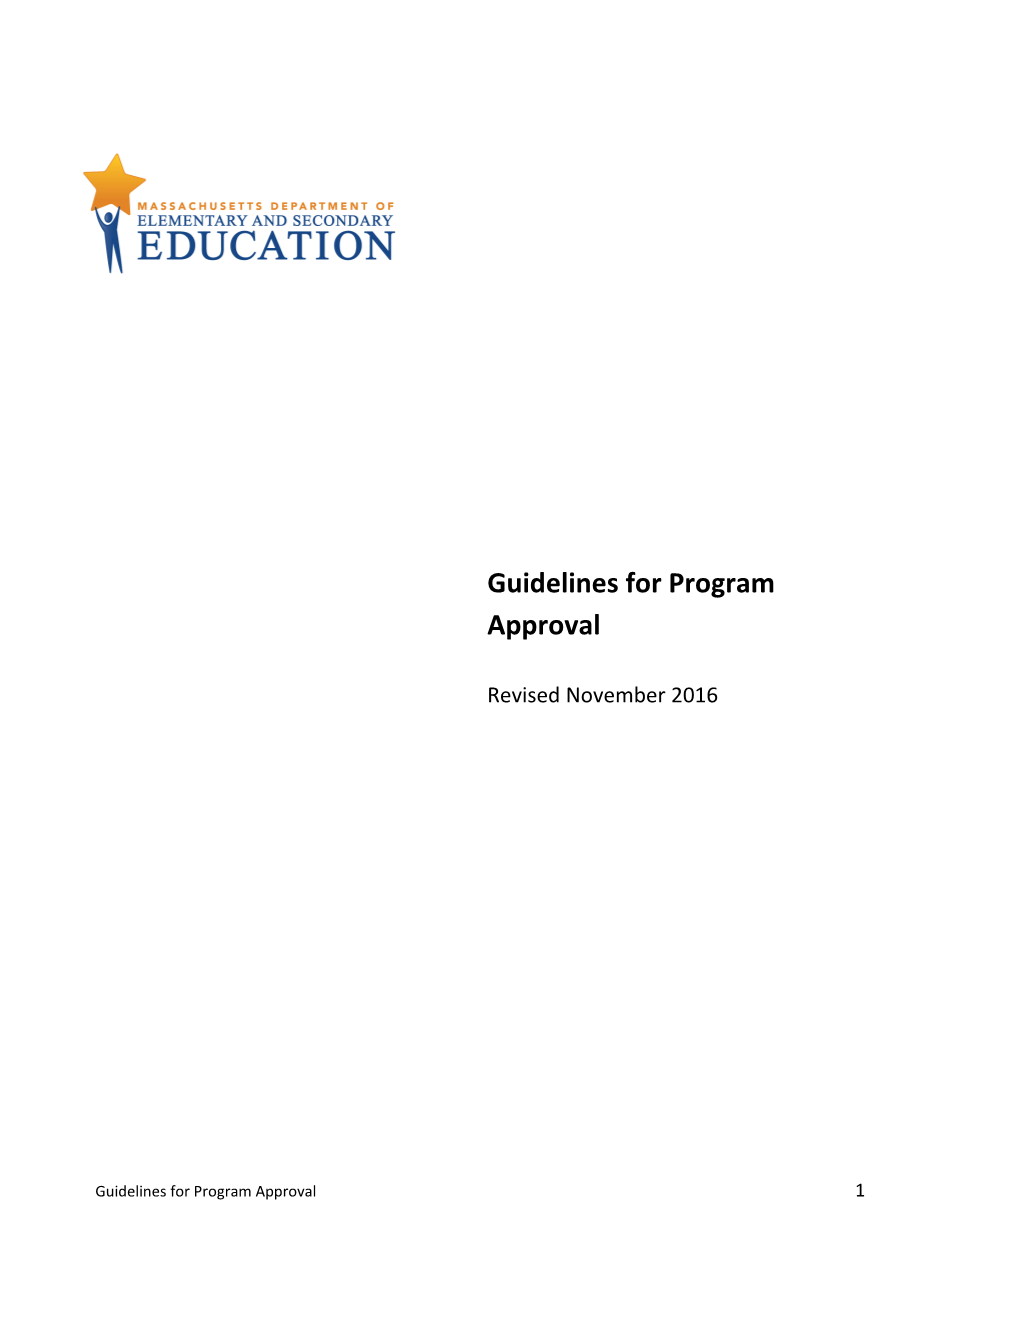 Guidelines for Program Approval - November 2016